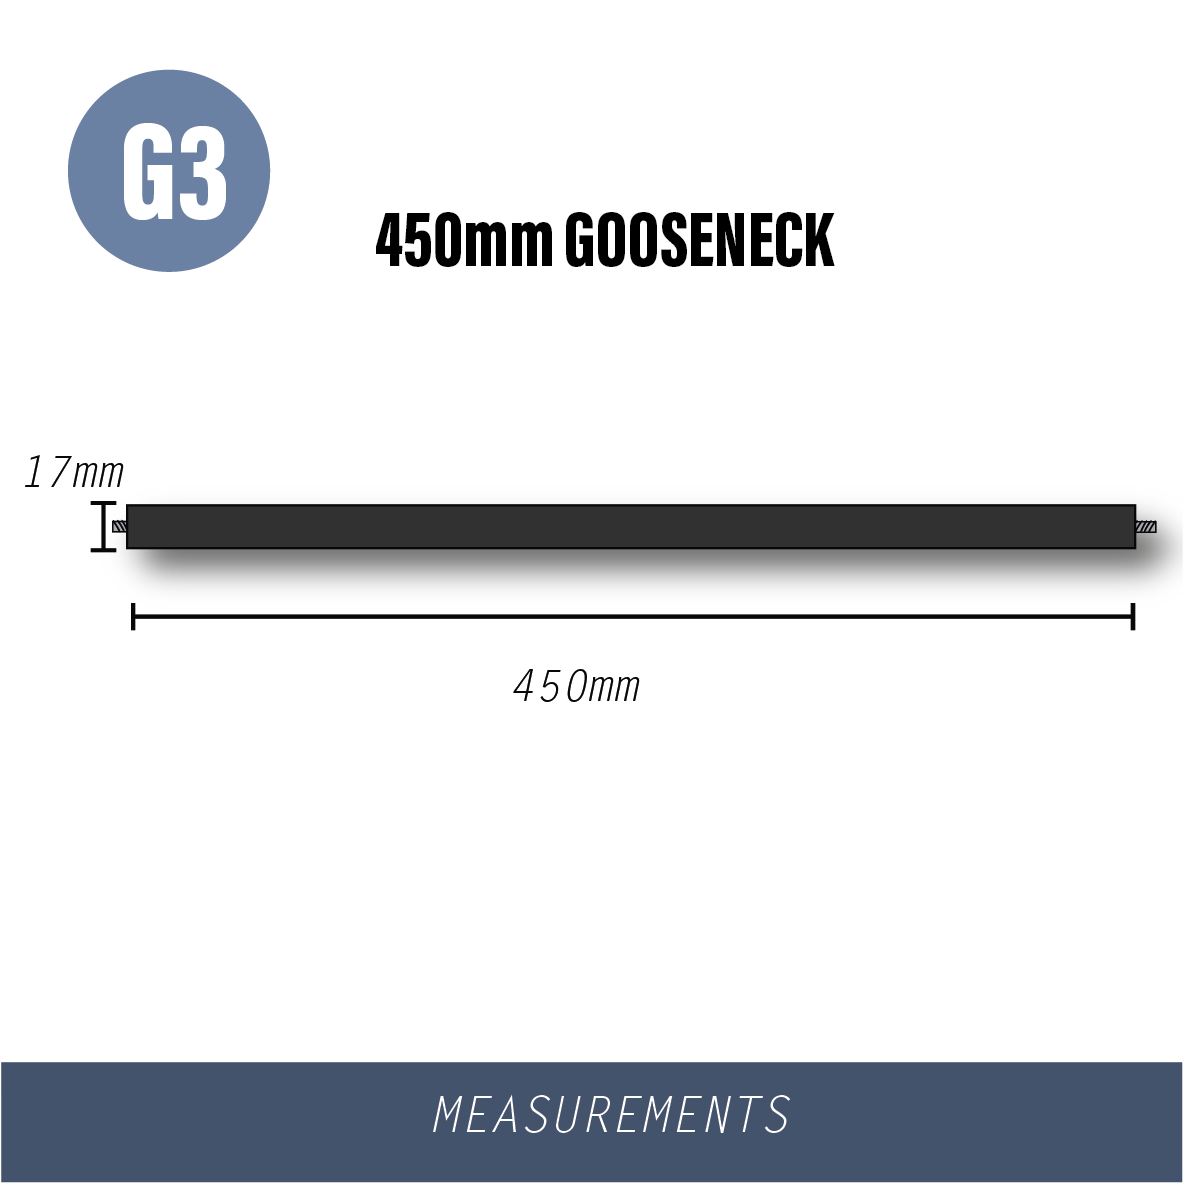 G3-GOOSENECK 450mm